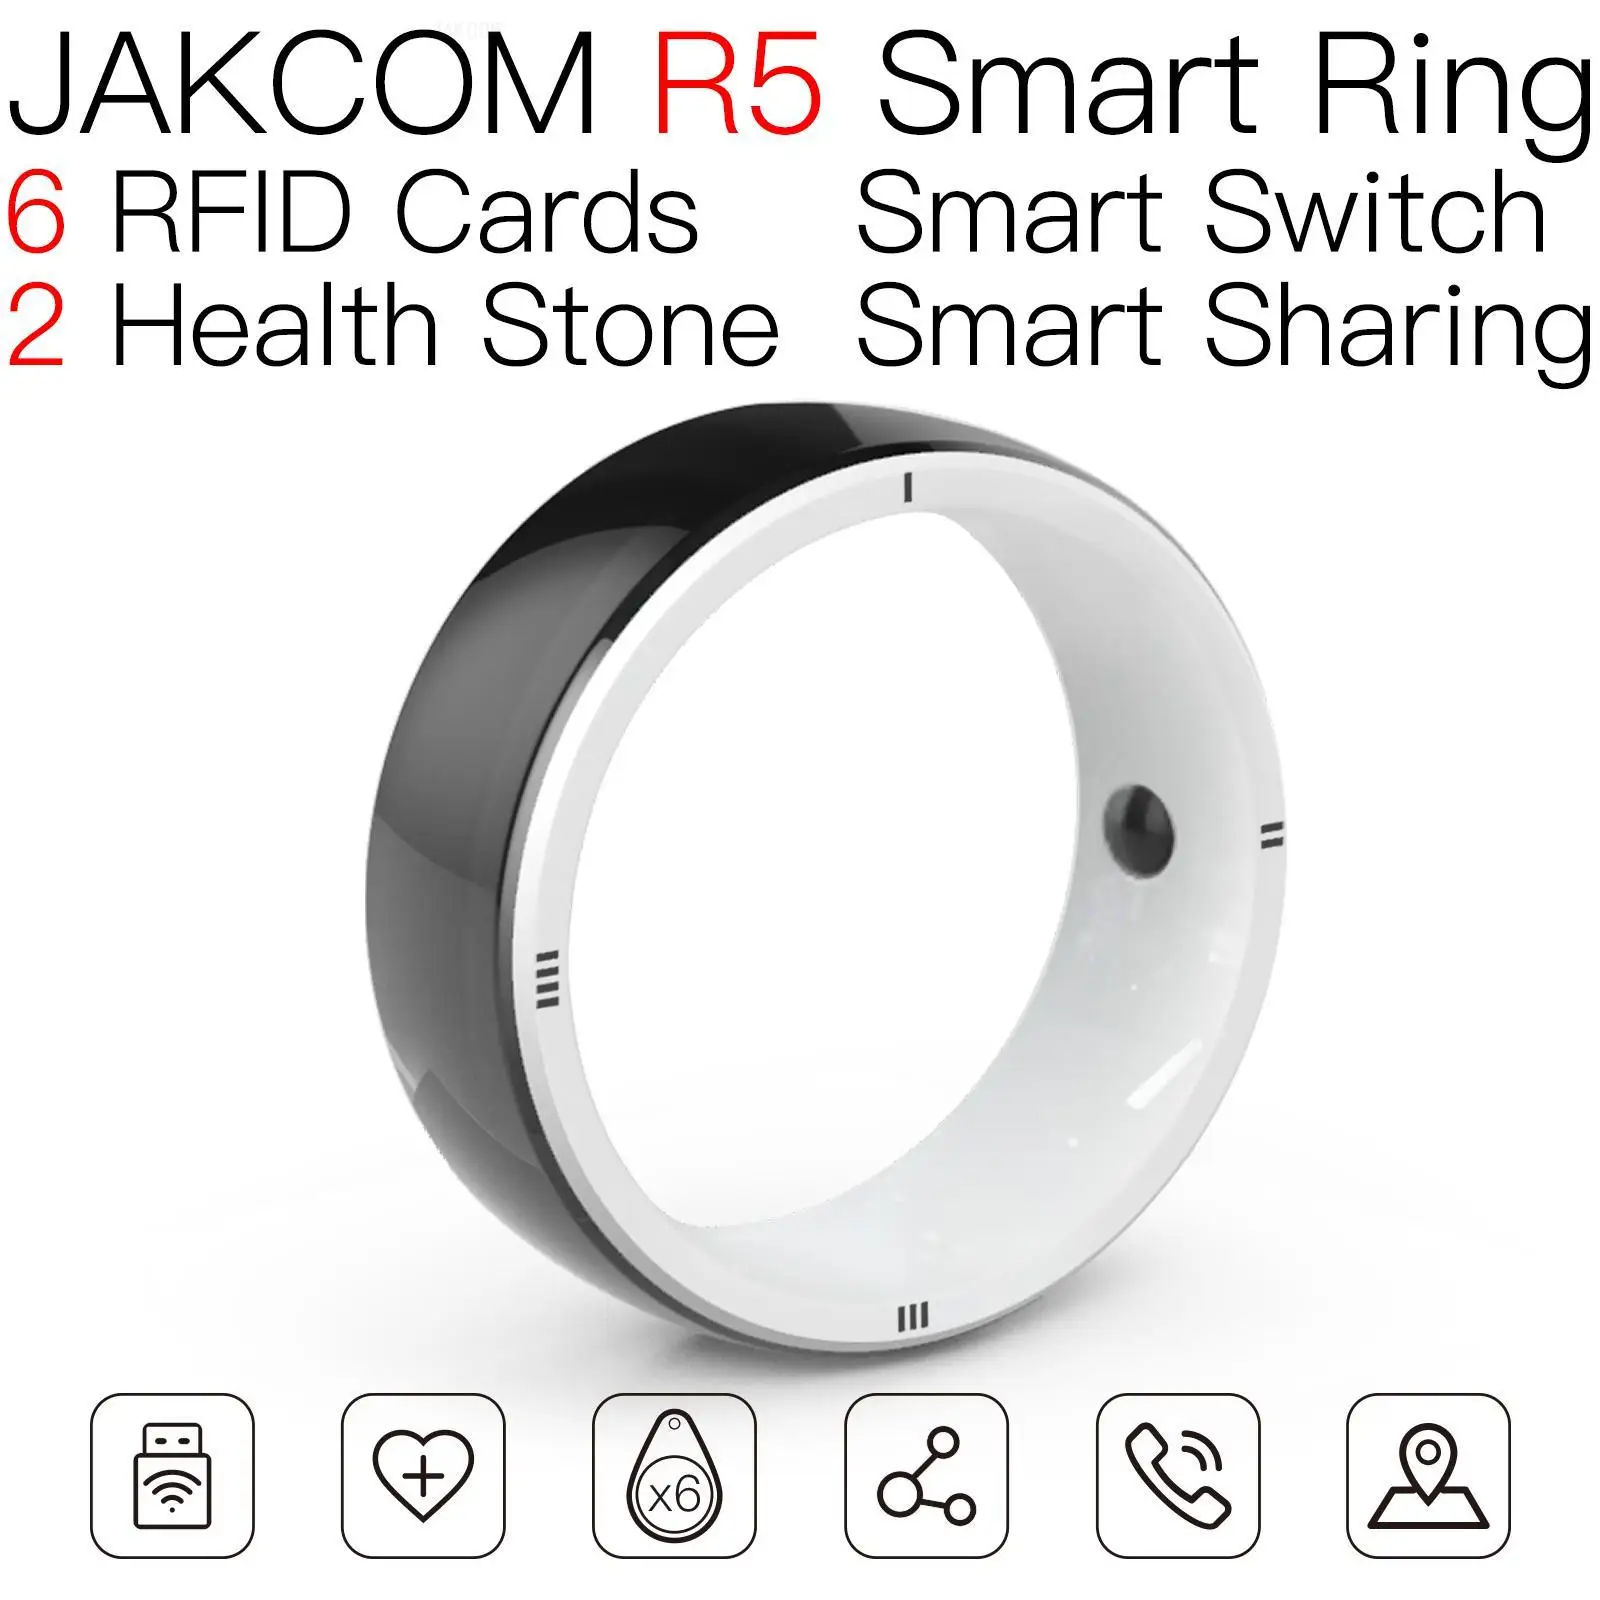 

Умное кольцо JAKCOM R5, супер ценность, чем 4 оригинальные часы, ничего 1, телефон весы состава 3, смарт-ТВ y68 мм2, магазин светится